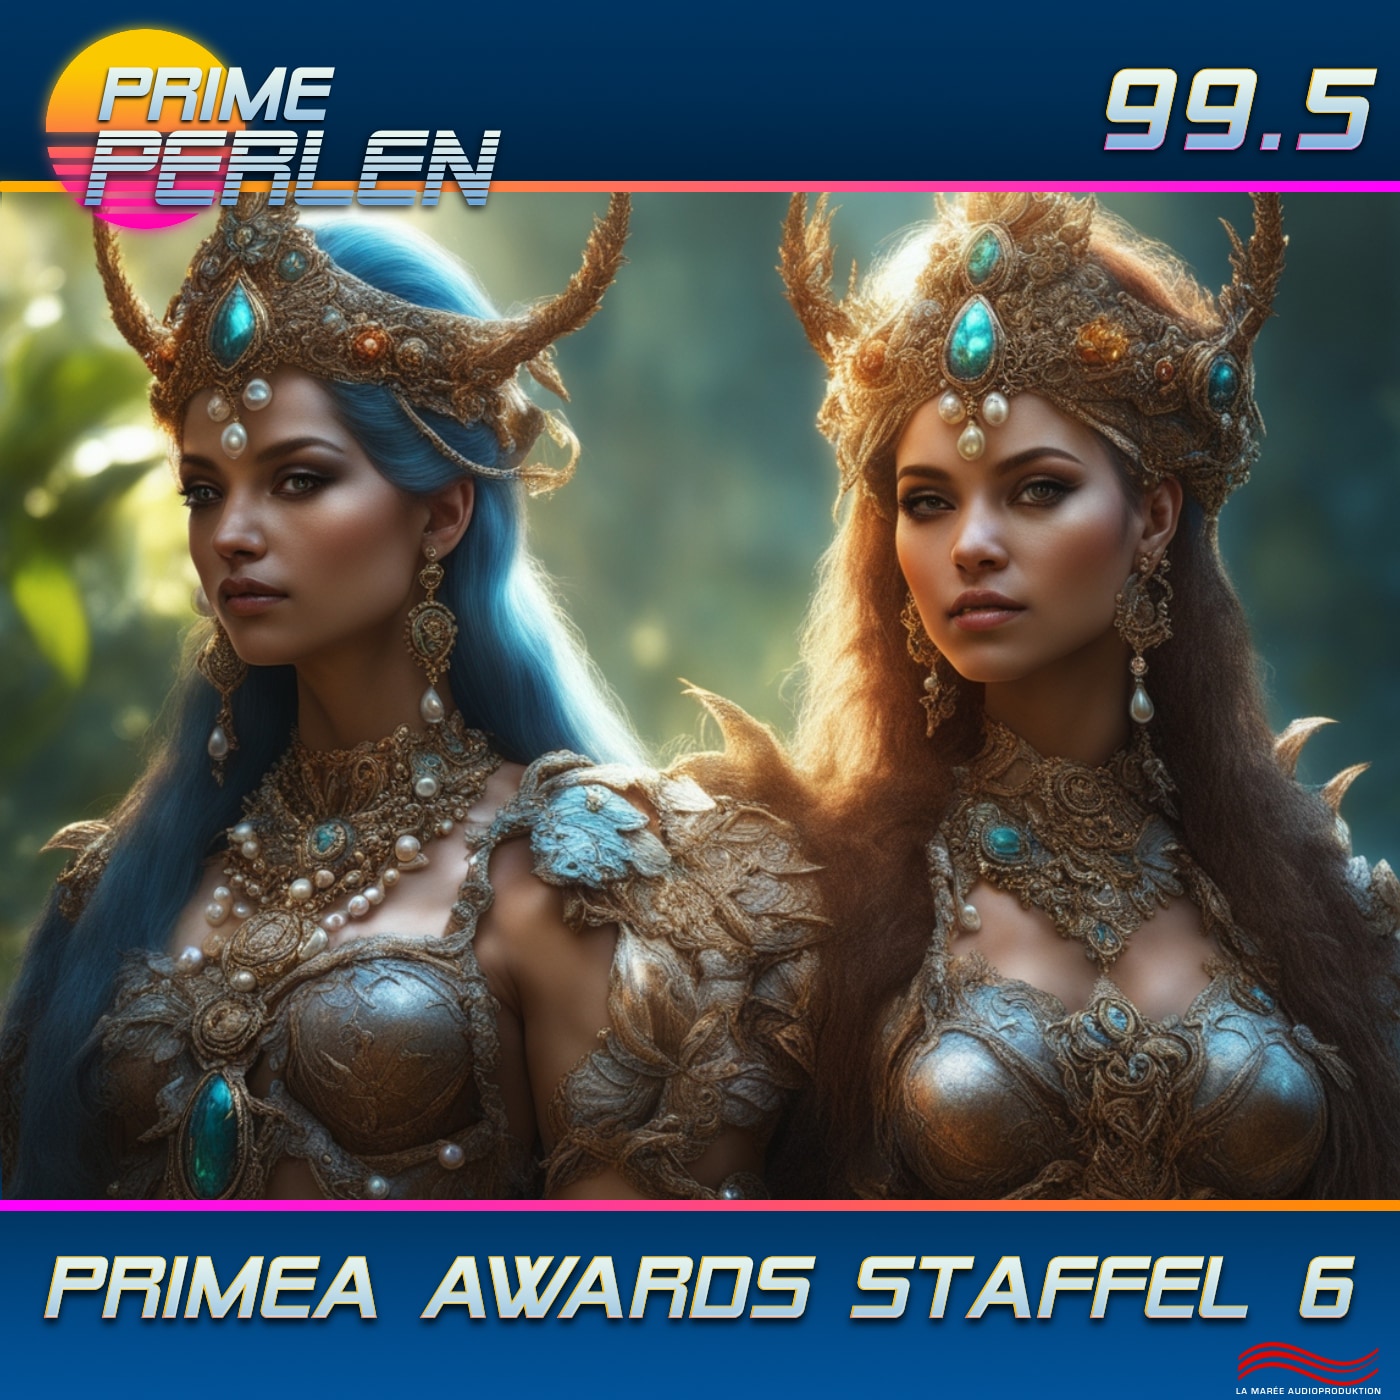 Prime Perlen #99.5 – PRIMEA AWARDS STAFFEL 6